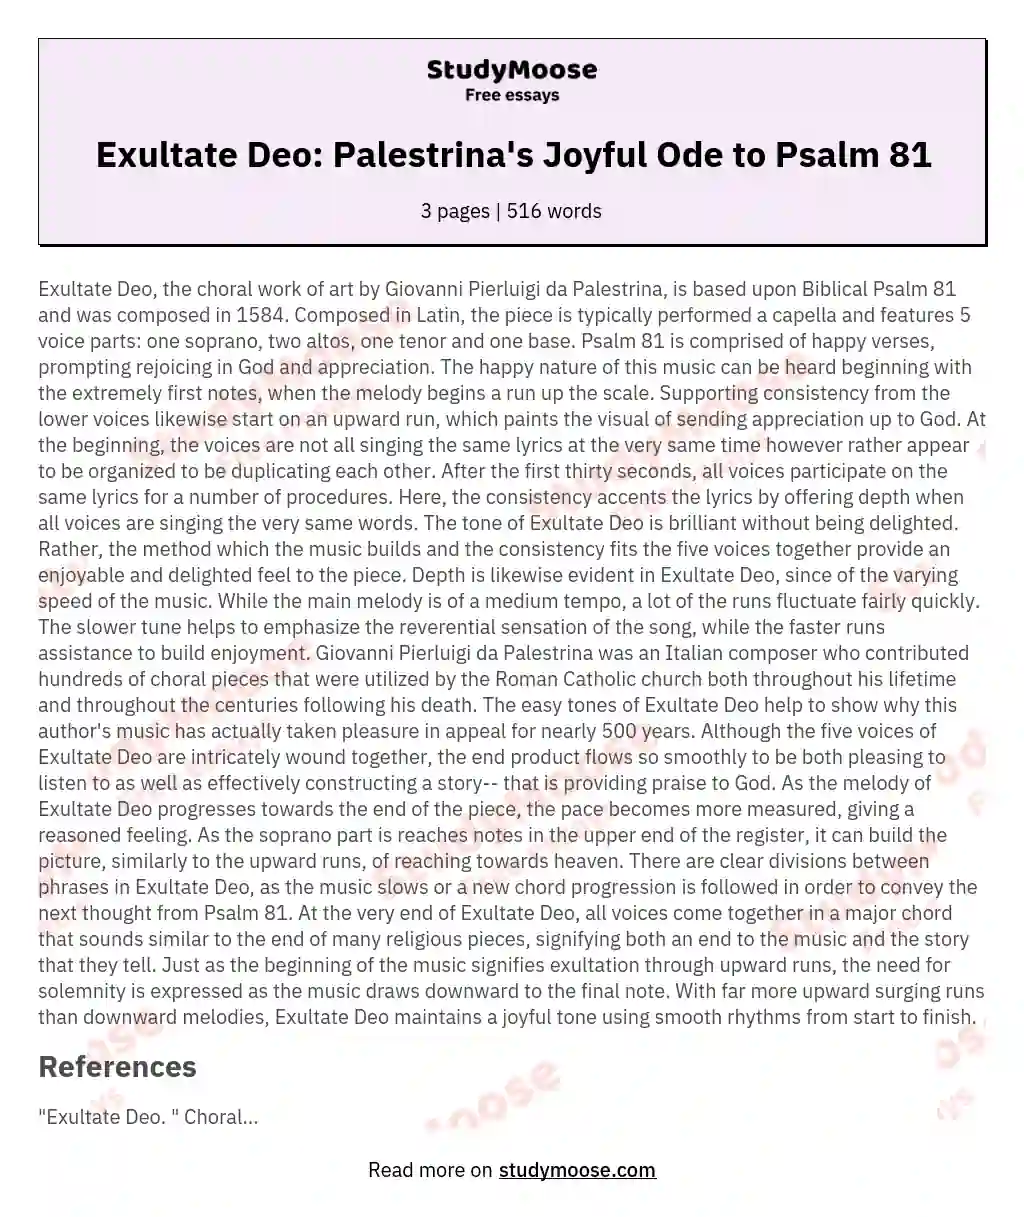 Exultate Deo: Palestrina's Joyful Ode to Psalm 81 essay